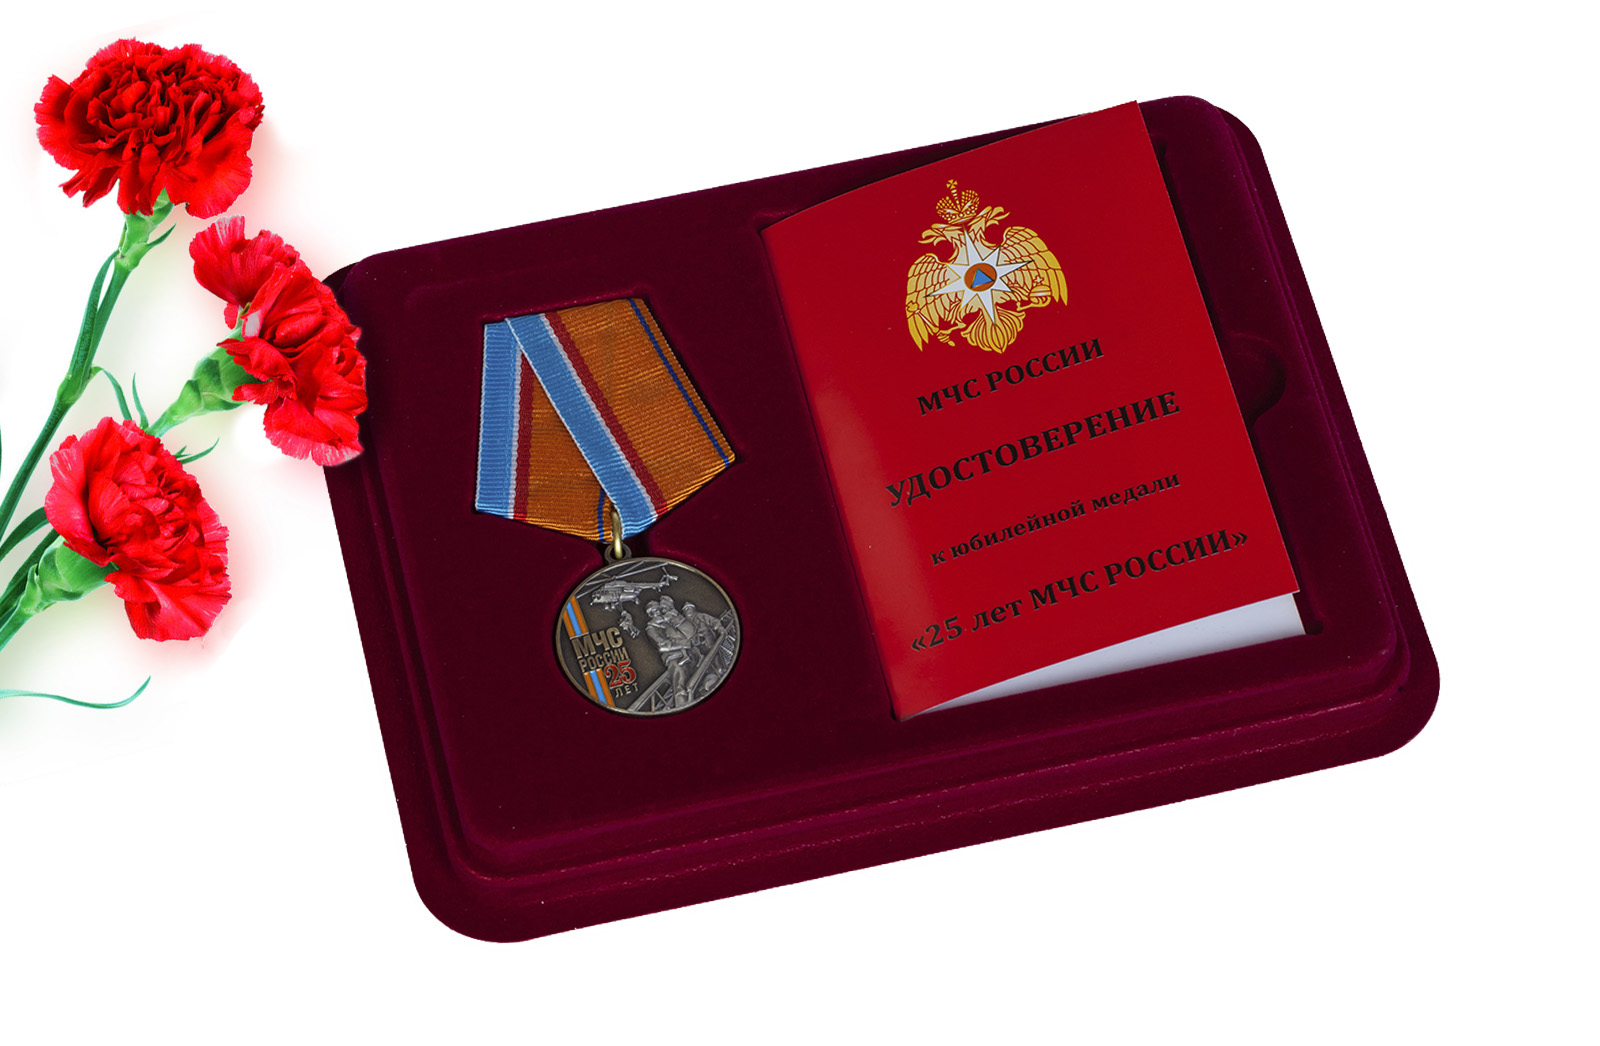 Купить общественную медаль "МЧС России" с доставкой в ваш город